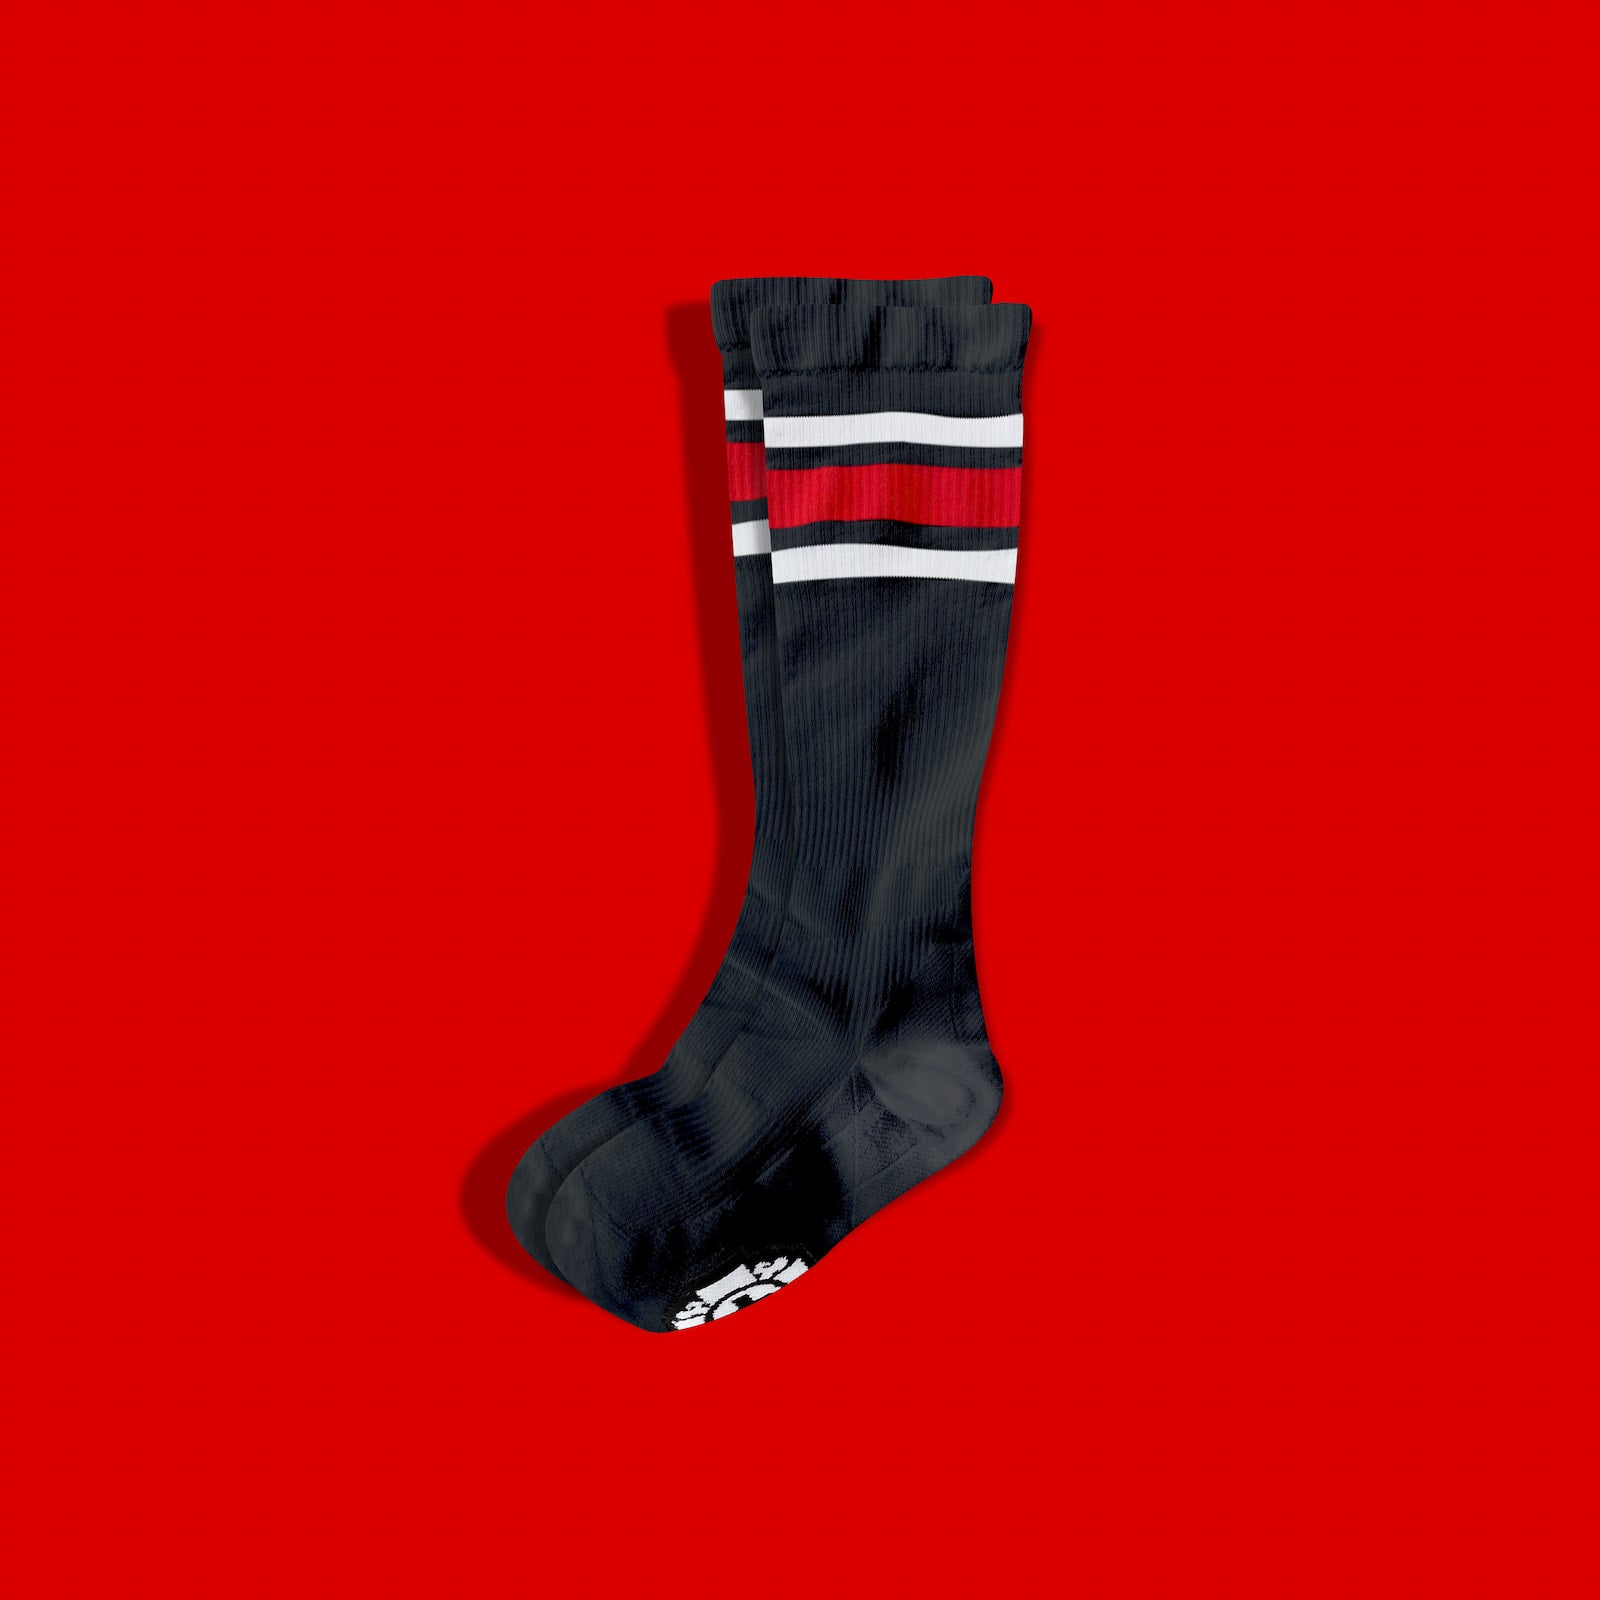 1Pack Black Compression Socks, Compression Running Socks